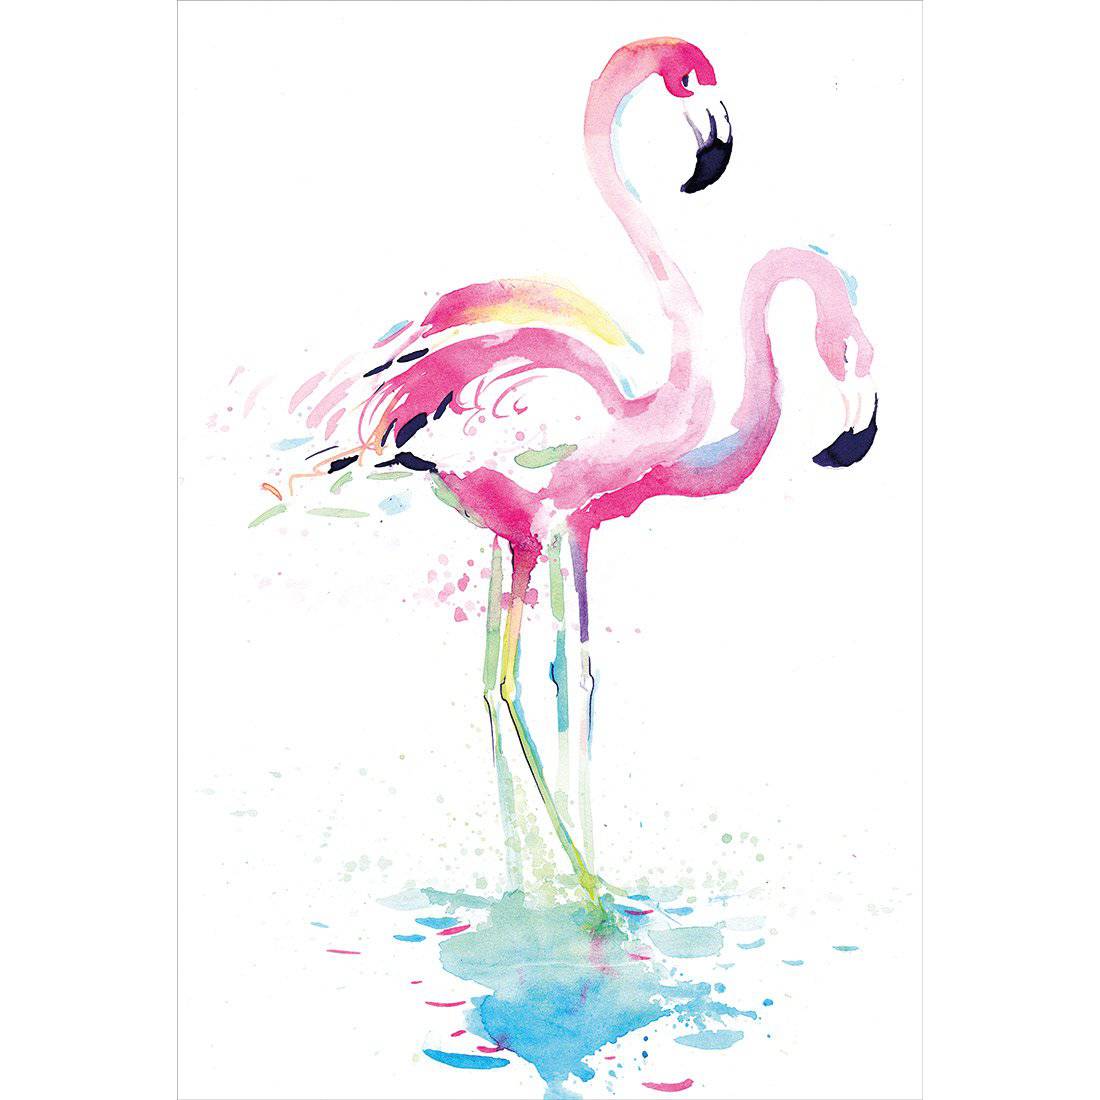 Flirty Flamingos Canvas Art-Canvas-Wall Art Designs-45x30cm-Canvas - No Frame-Wall Art Designs